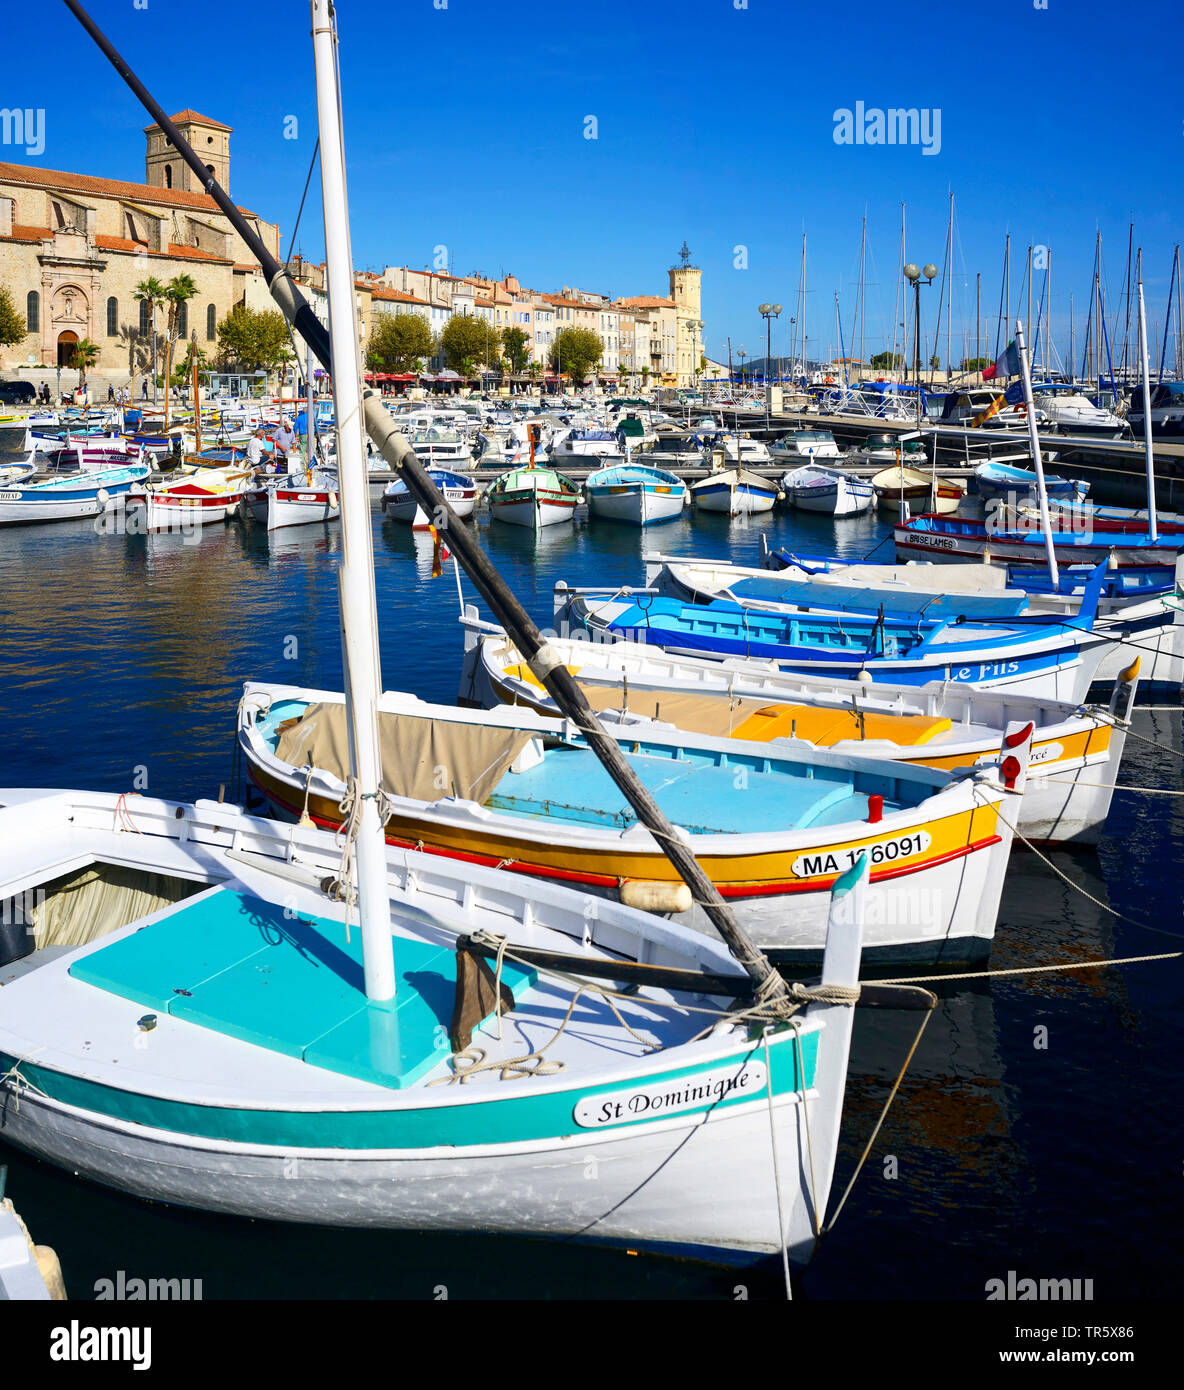 Bateaux de pêche dans le port de La Ciotat, France, Provence, La Ciotat Banque D'Images